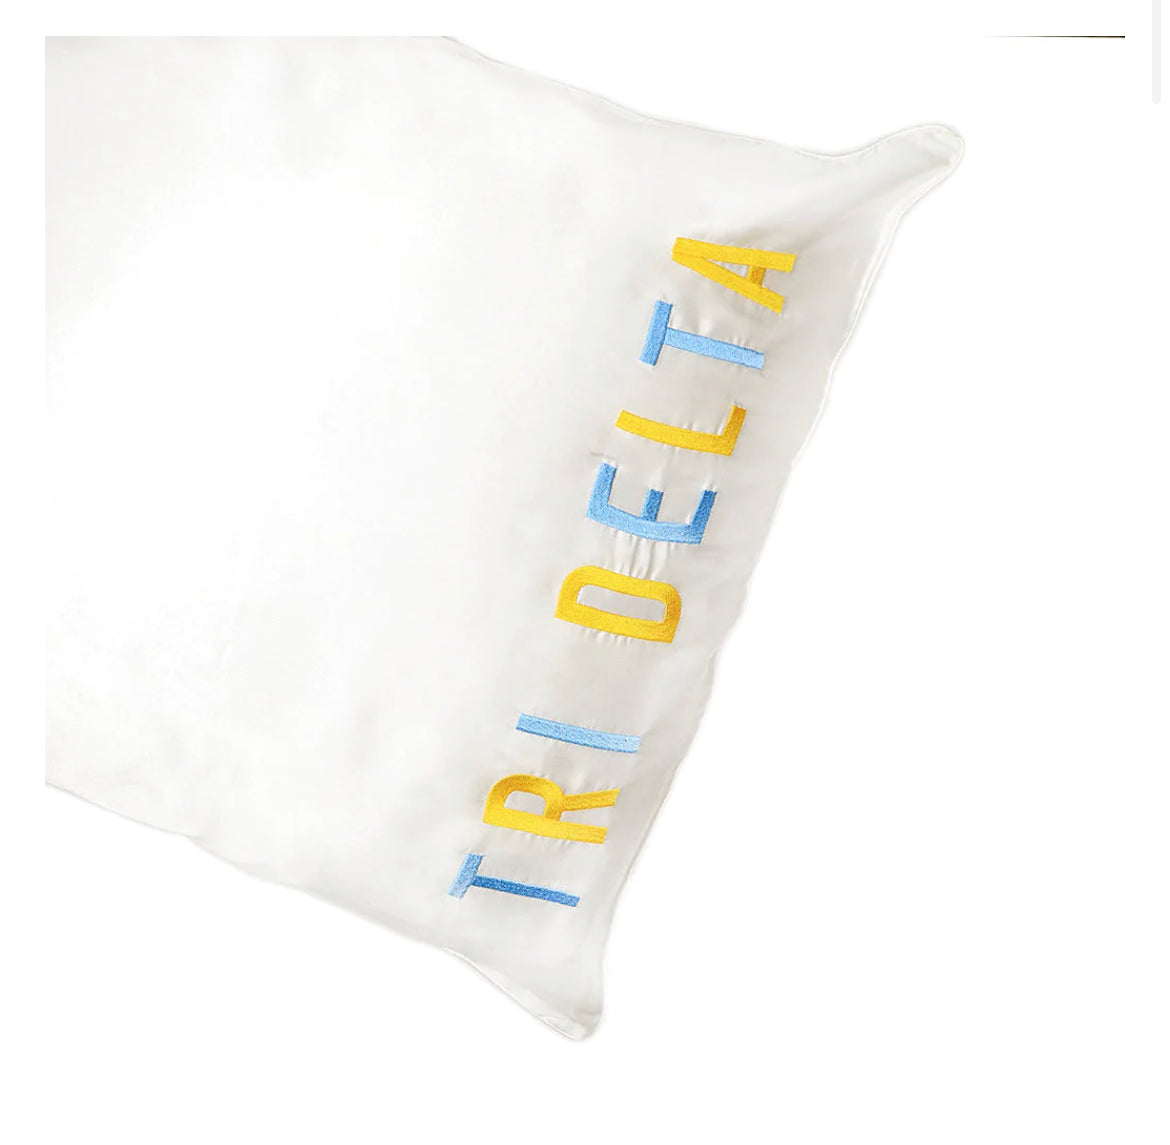 Tri delta pillowcase